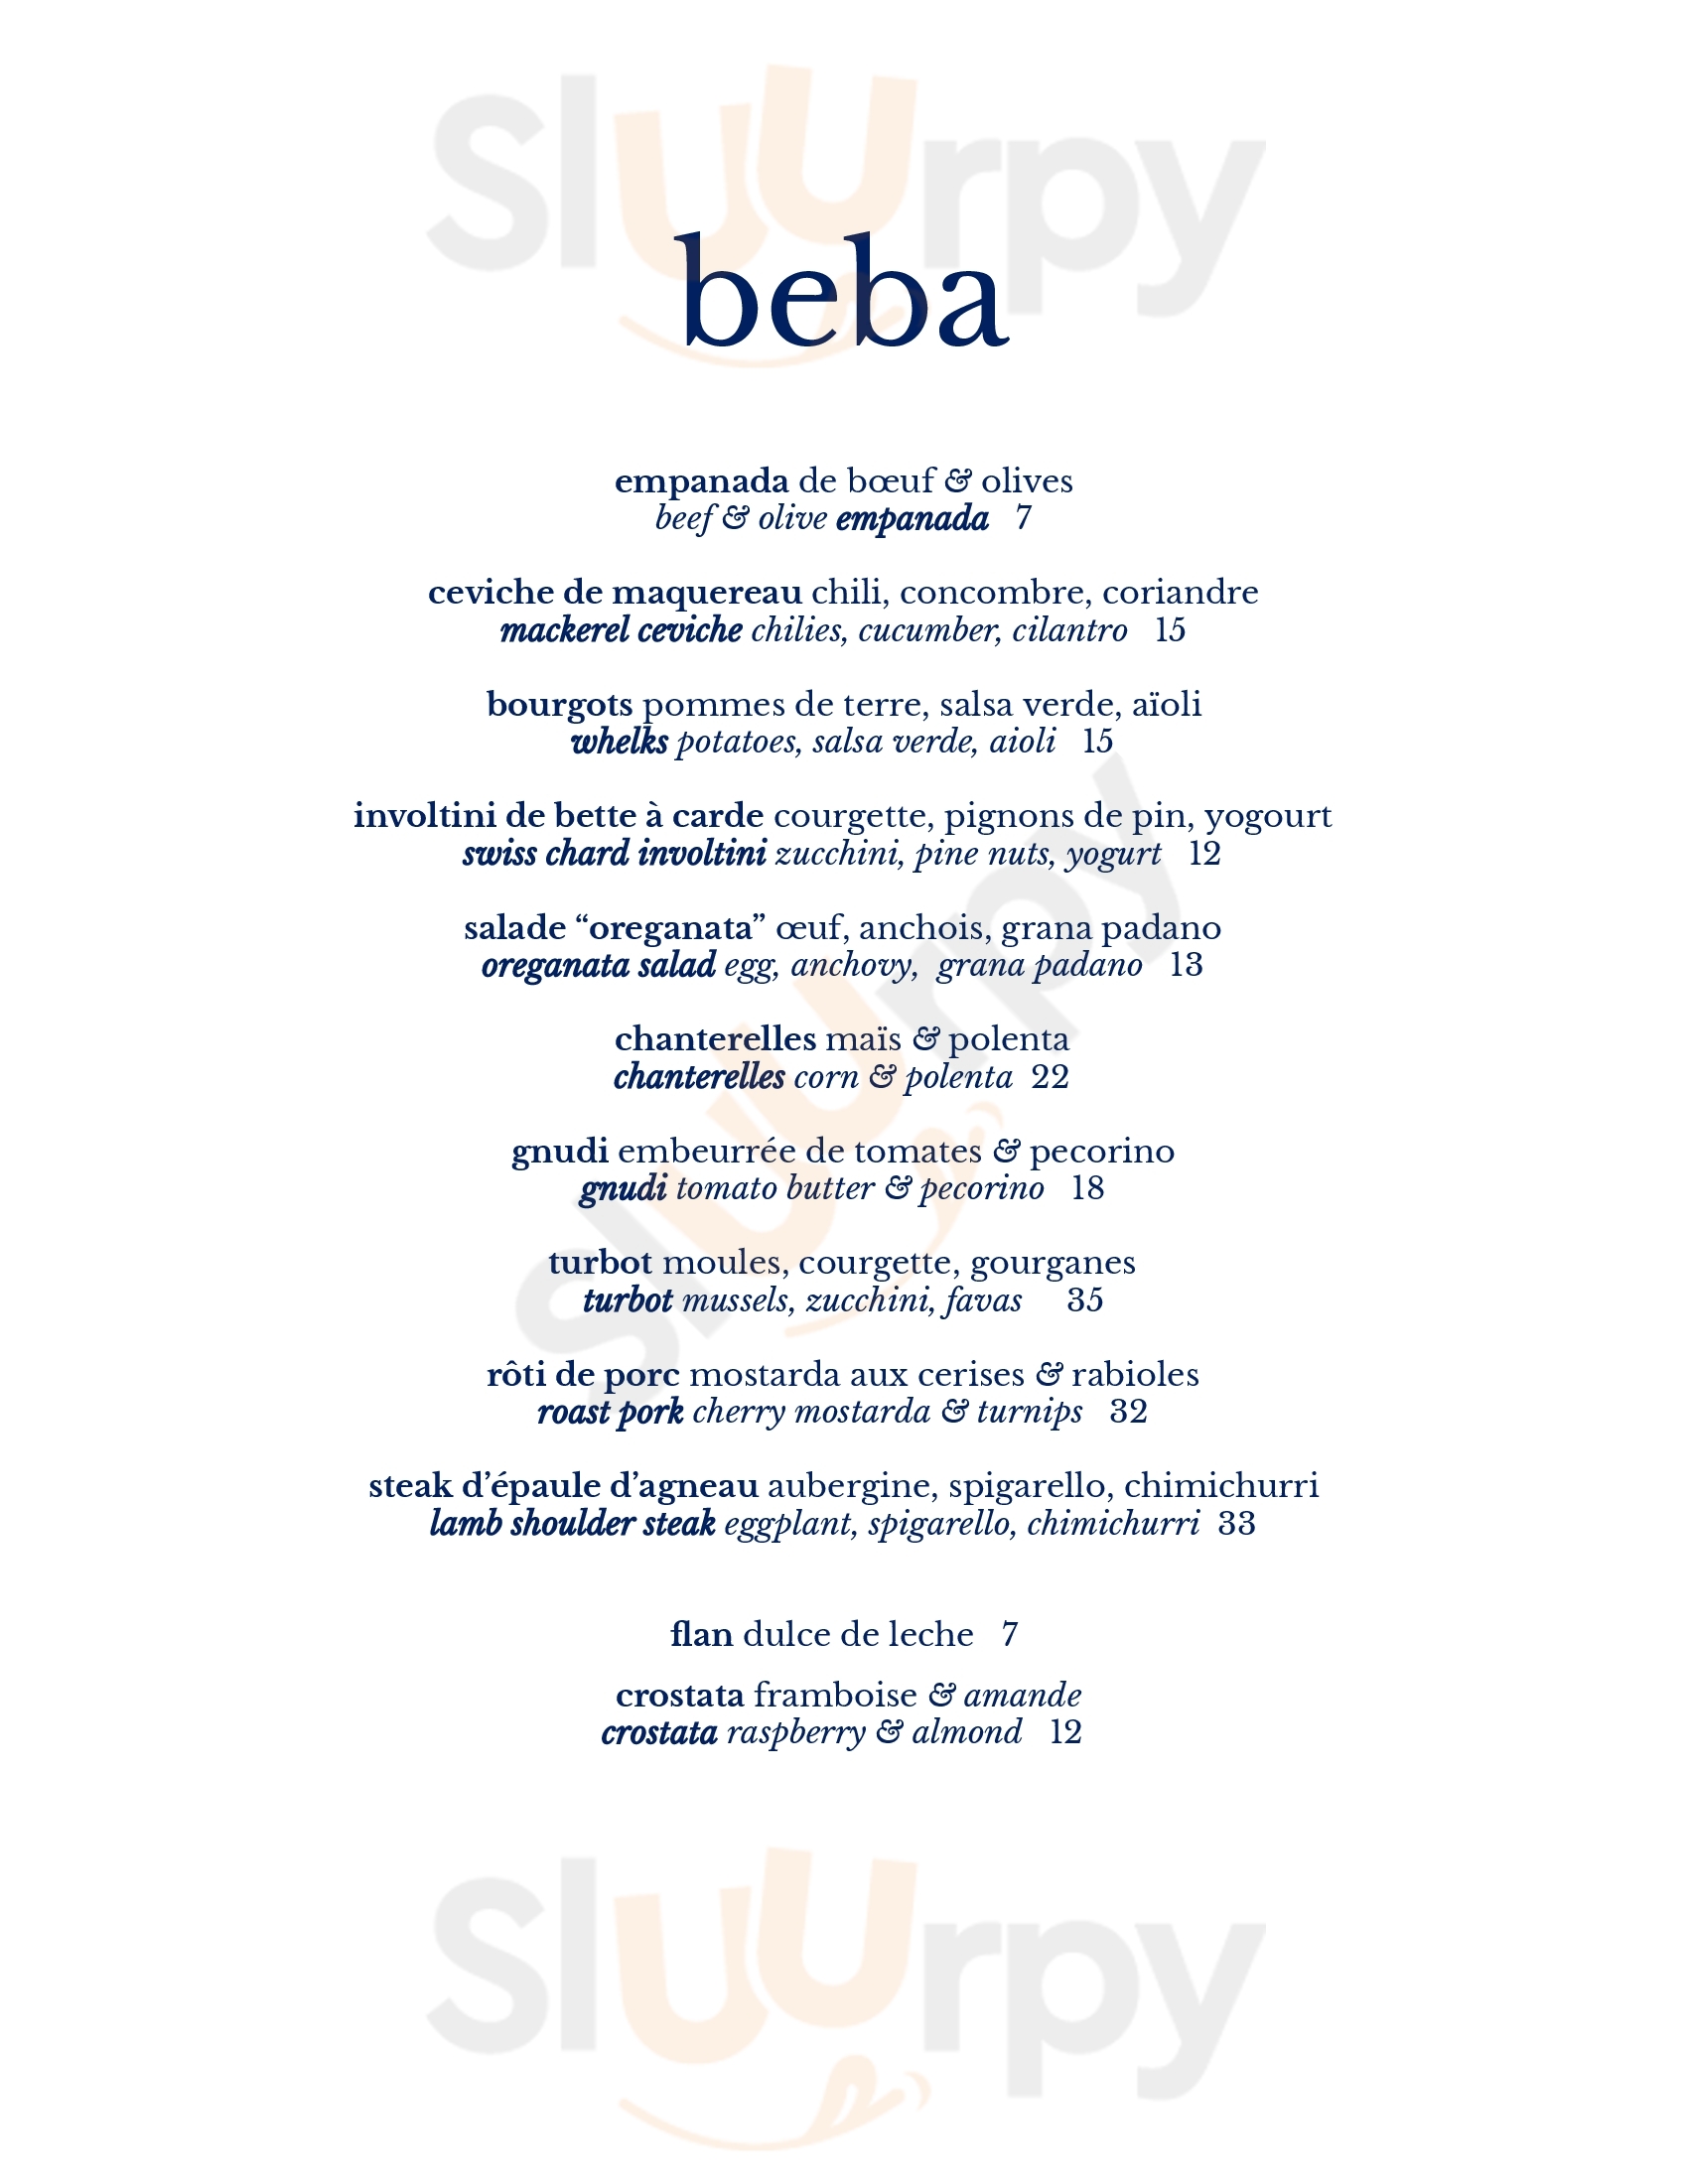 Restaurant Beba Montreal Menu - 1